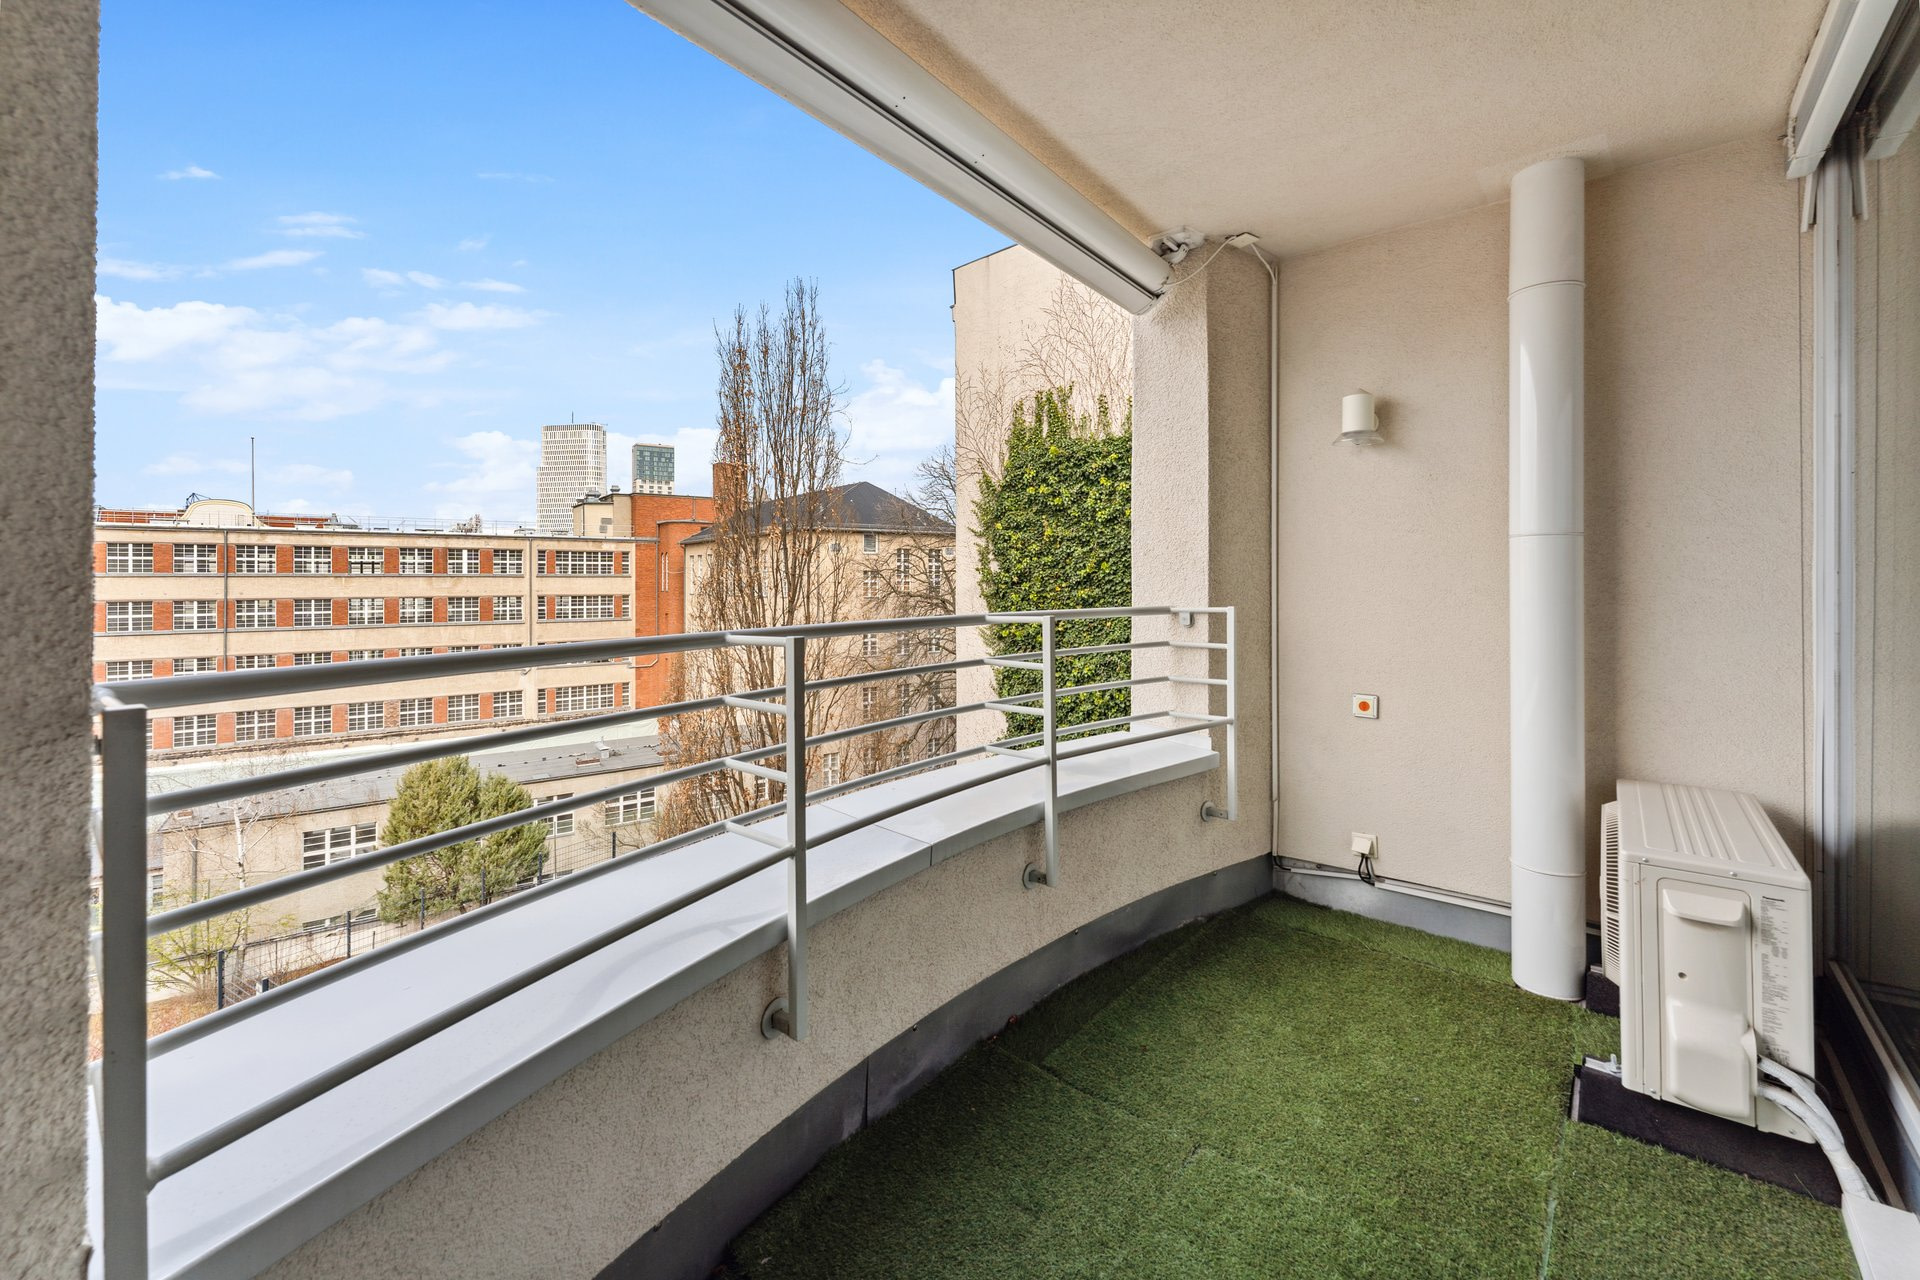 Dieses Beispiel zeigt Ihnen die Sicht auf einen Balkon sowie eine mögliche Aussicht auf die Umgebung der Berliner City West. Aufnahme eines bezugsfertigen Apartments in der Tertianum Residenz Berlin.